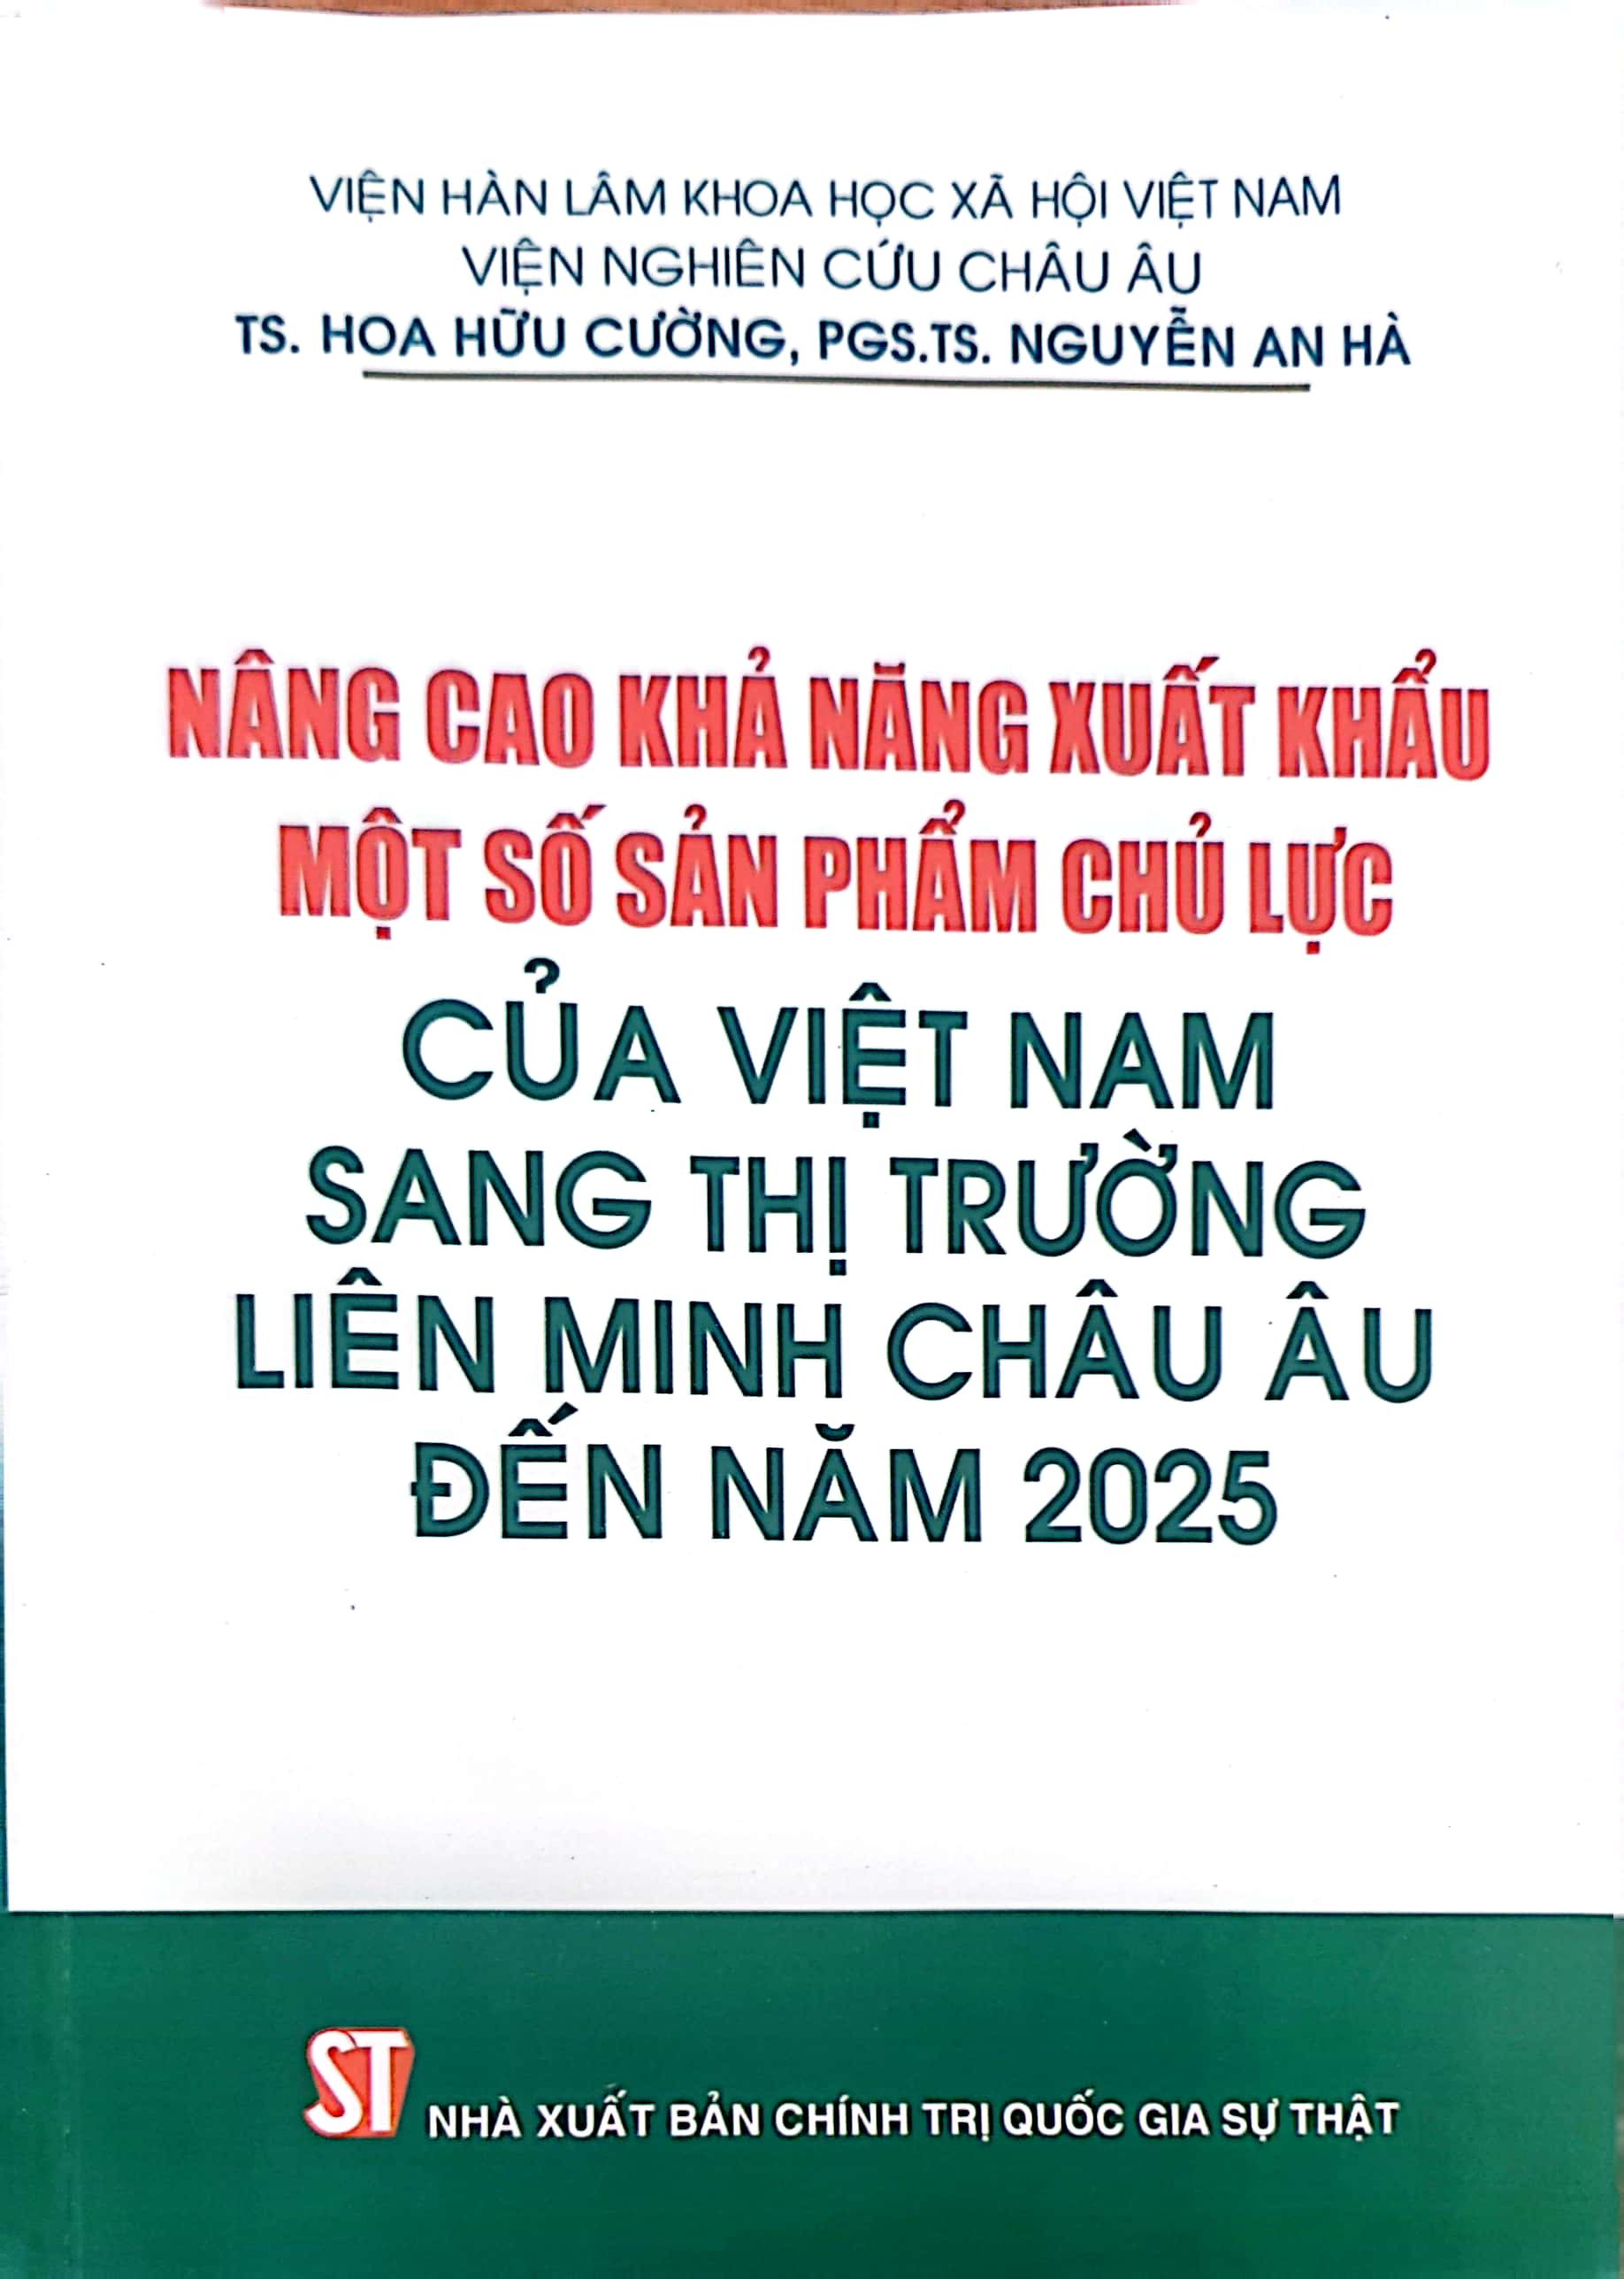 Nâng cao khả năng xuất khẩu một số sản phẩm chủ lực của Việt Nam sang thị trường Liên minh châu Âu đến năm 2025